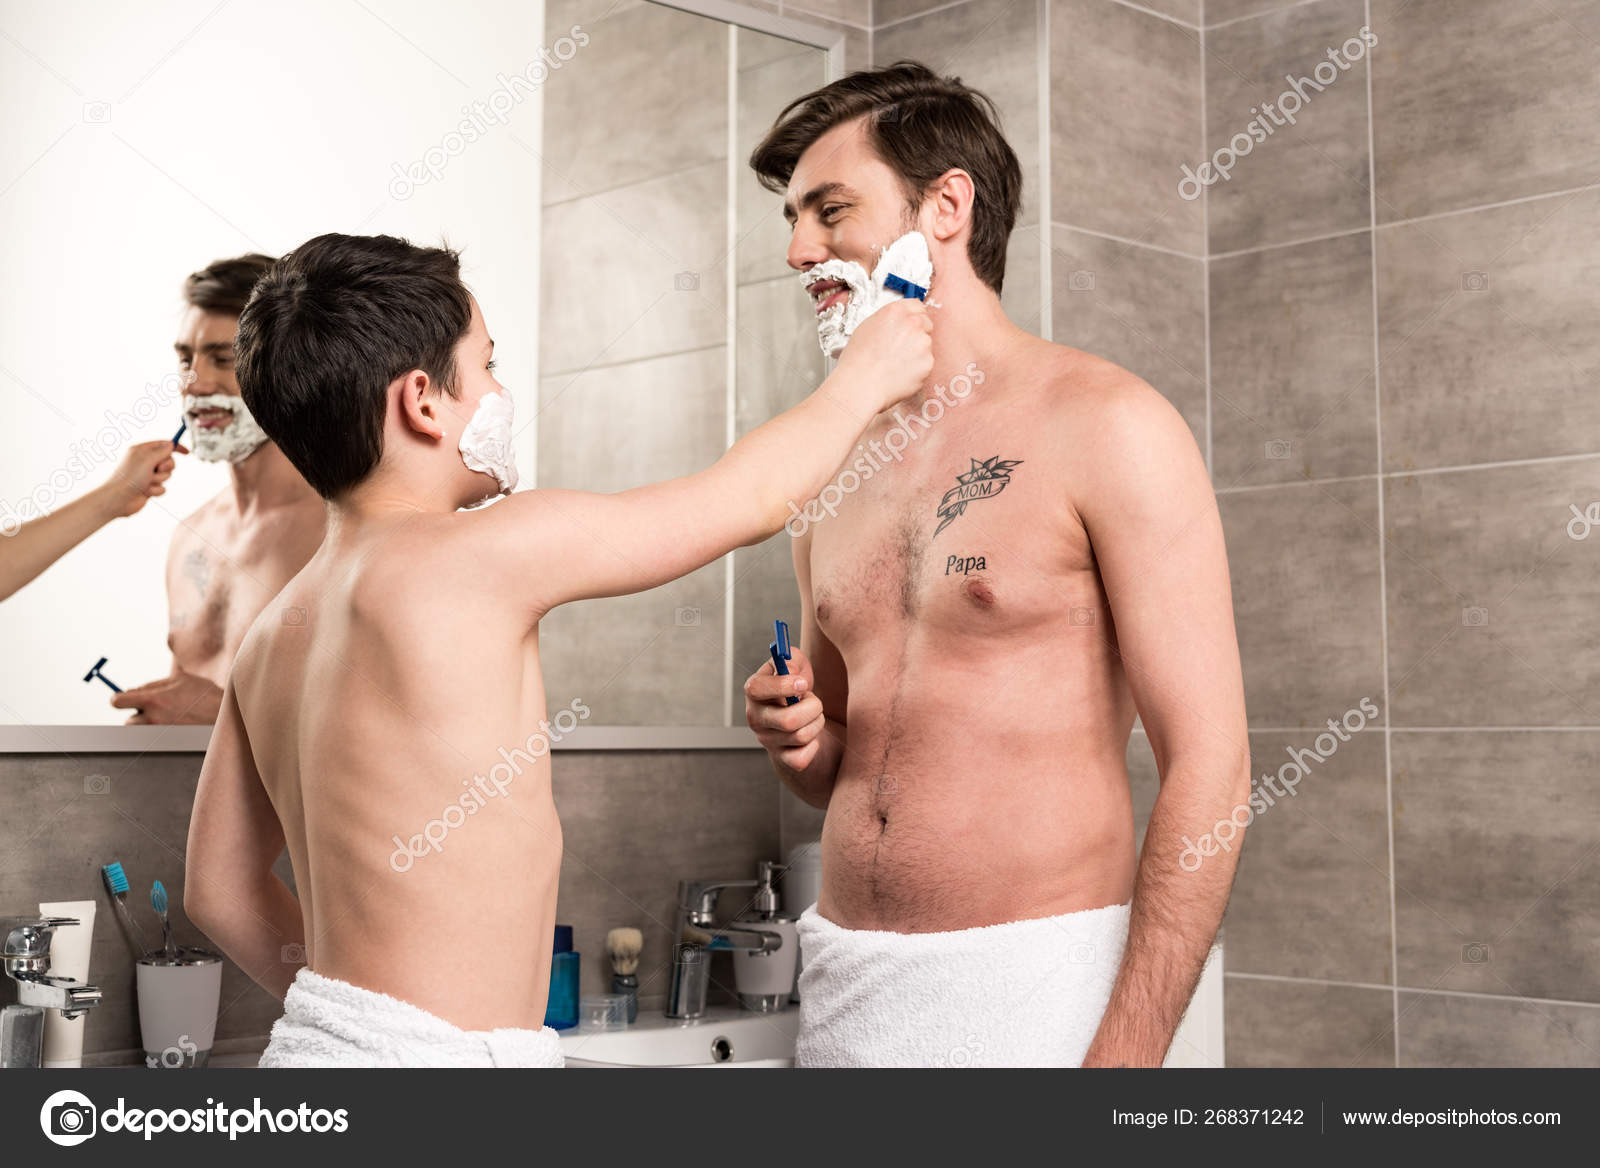 Мама бреет видео. Бритье подростка. Выбритый парень бреется. Парень подросток бреется. Процесс бритья.